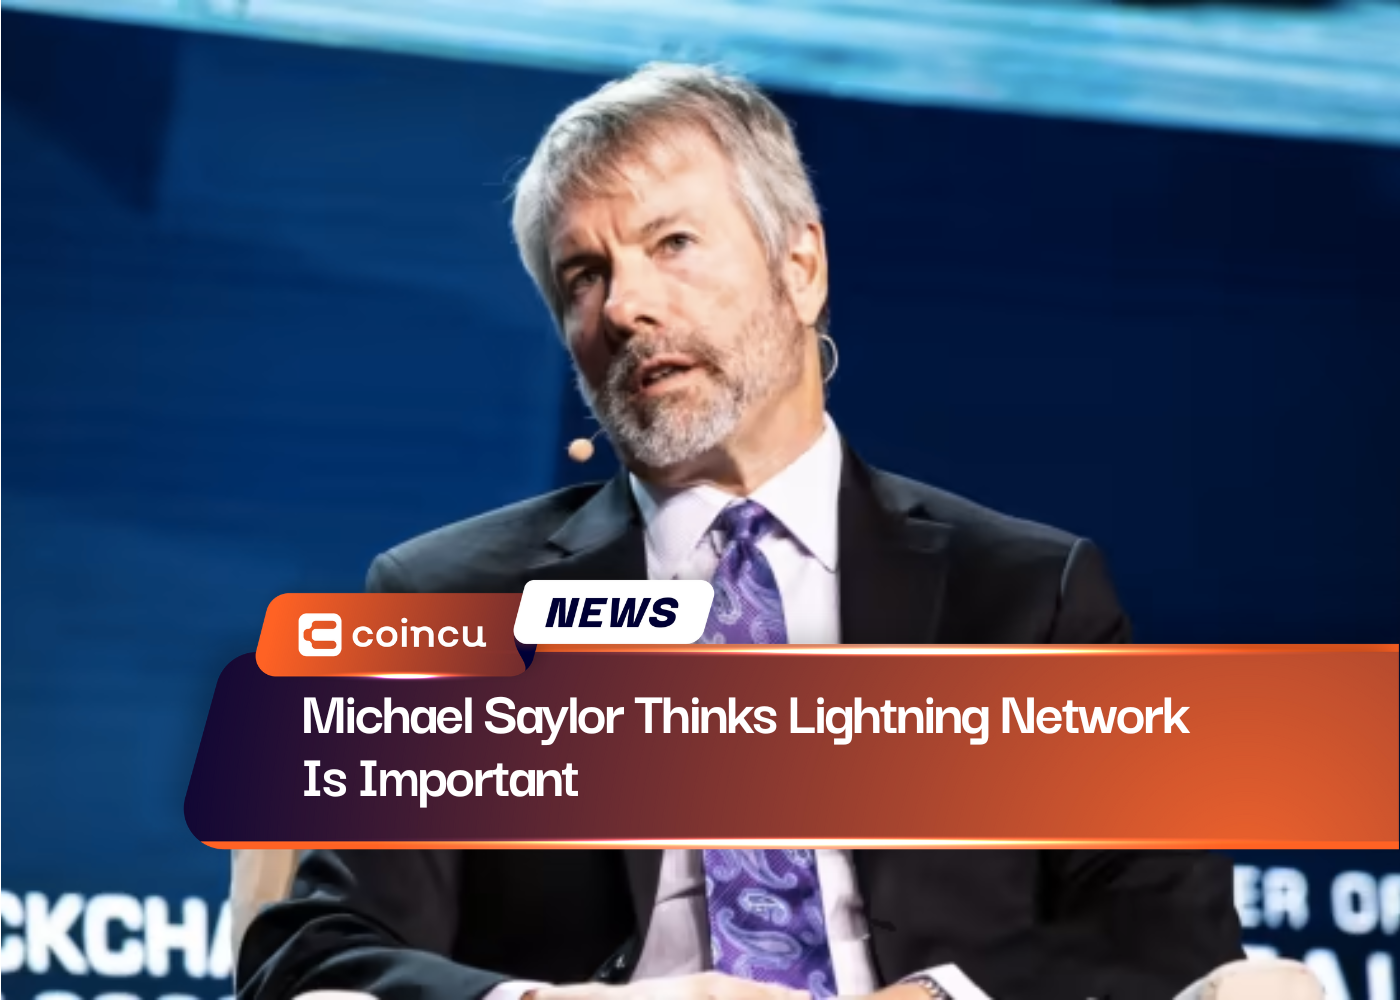 Michael Saylor cree que Lightning Network es importante